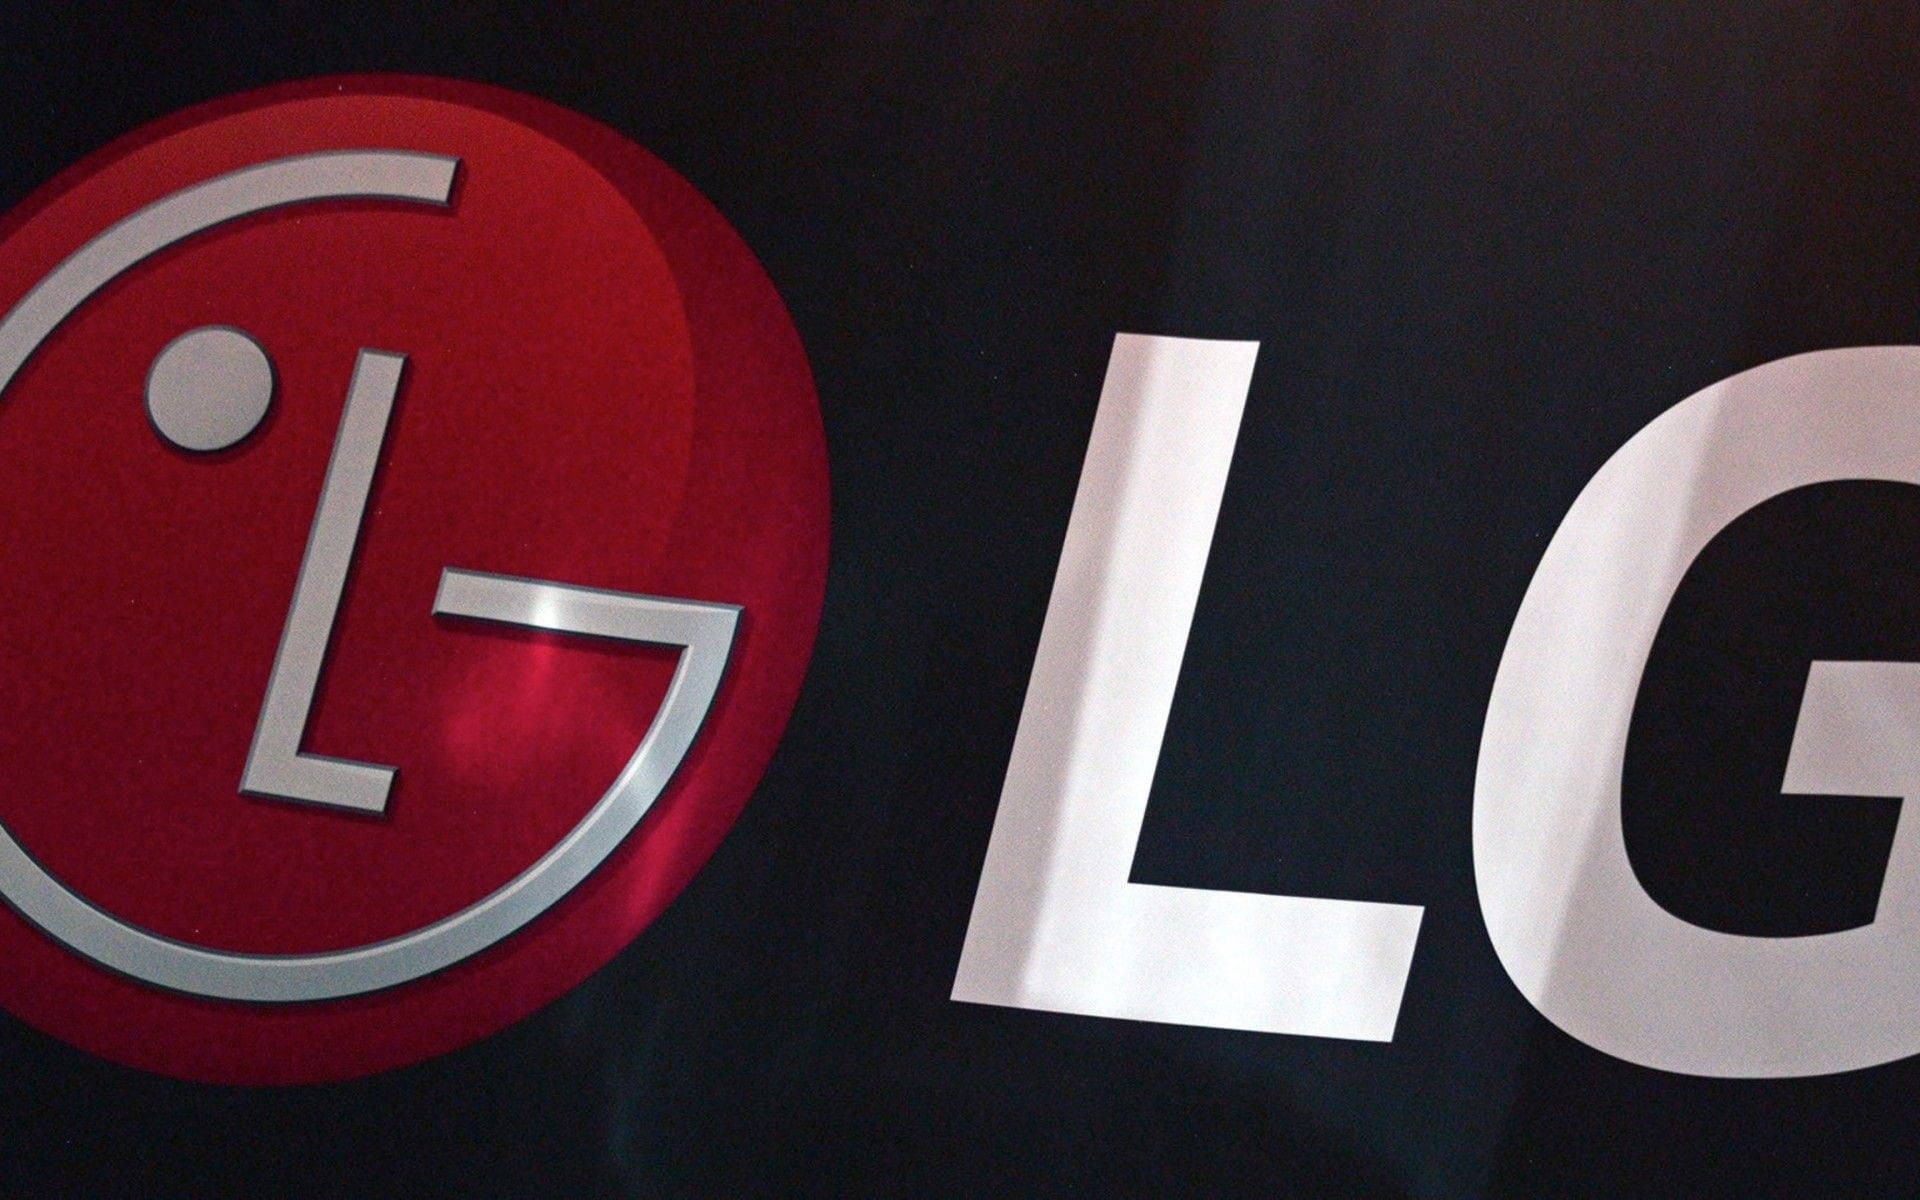 Logotipode Lg En Primer Plano Fondo de pantalla